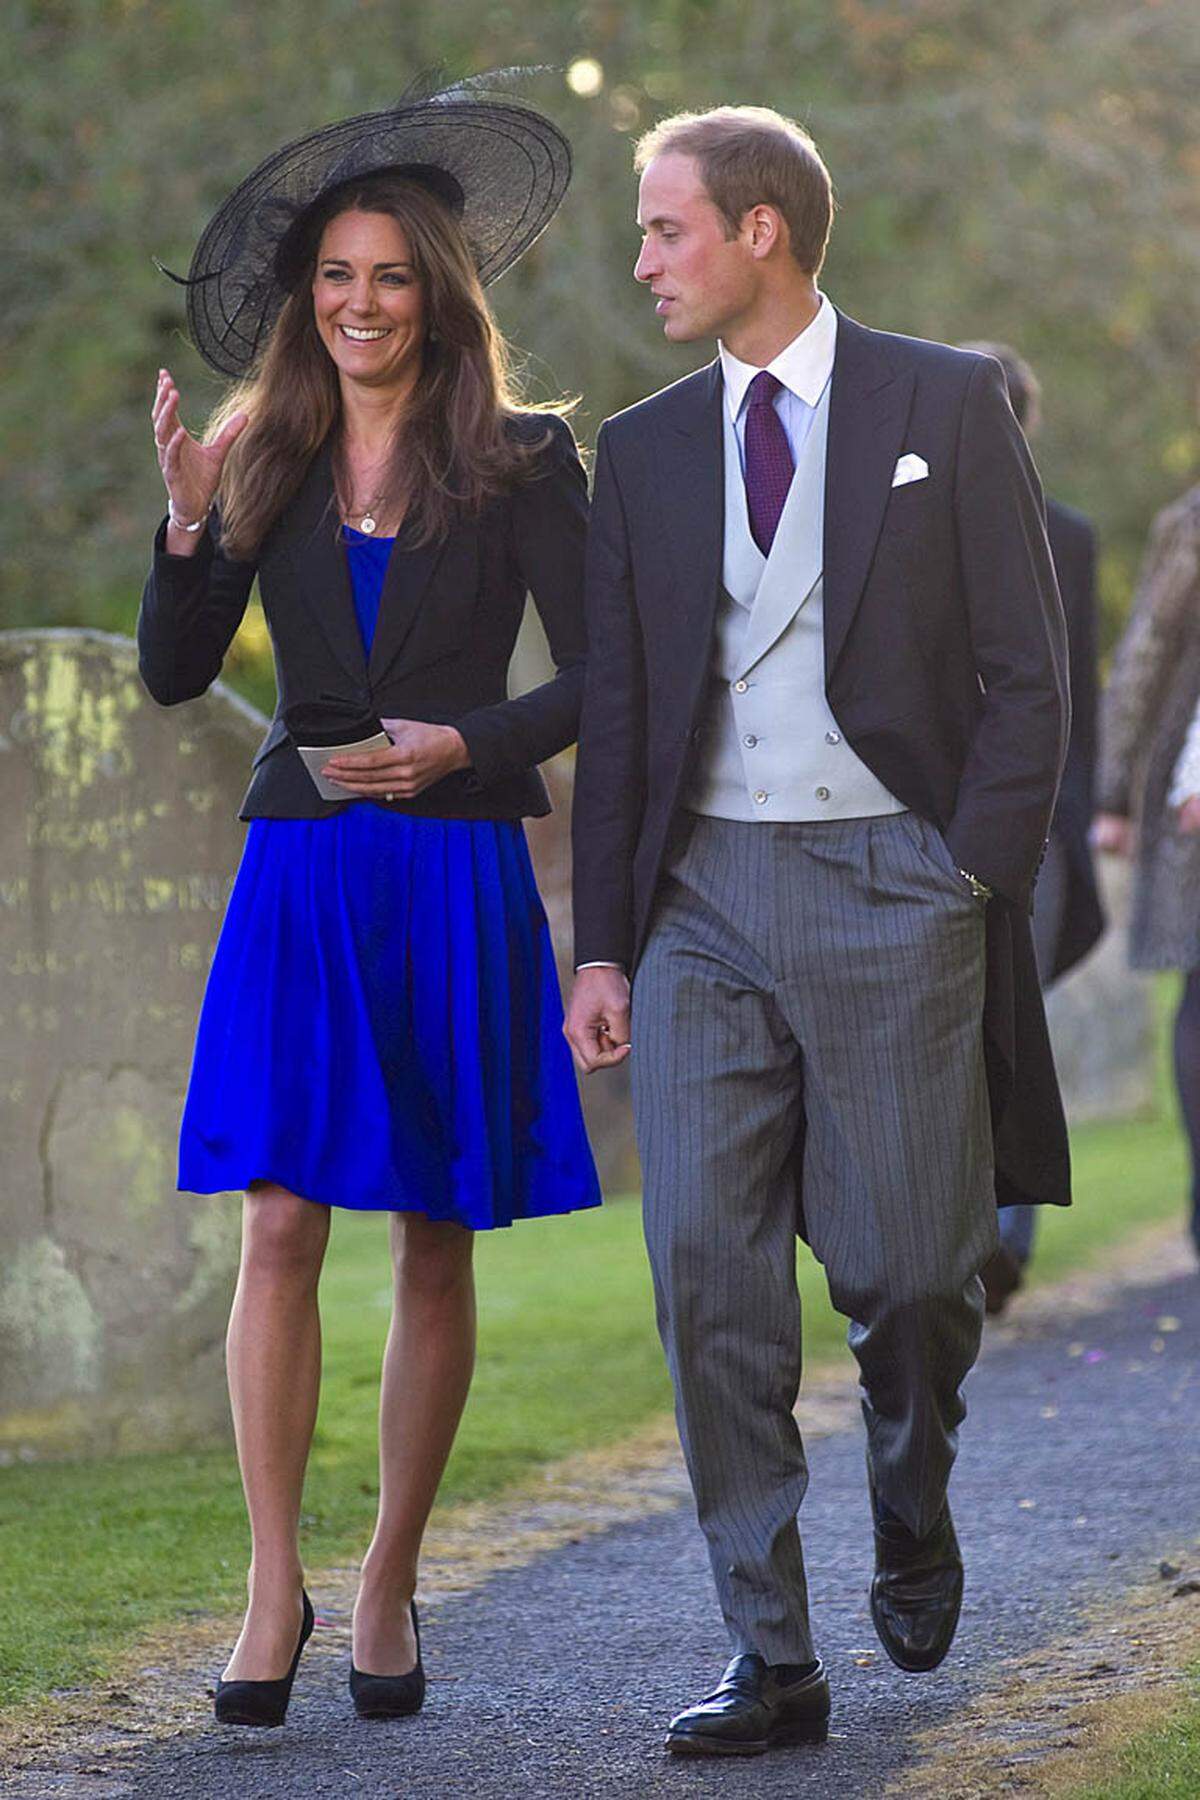 Demnach hat sich das Paar bereits im Oktober auf einer Reise in Kenia einander versprochen. Die Hochzeit ist für den 29. April 2011 in der Westmister Abbey in London geplant. Das Paar wird dann im Norden von Wales leben, wo William bei der Royal Air Force stationiert ist, so das Königshaus.